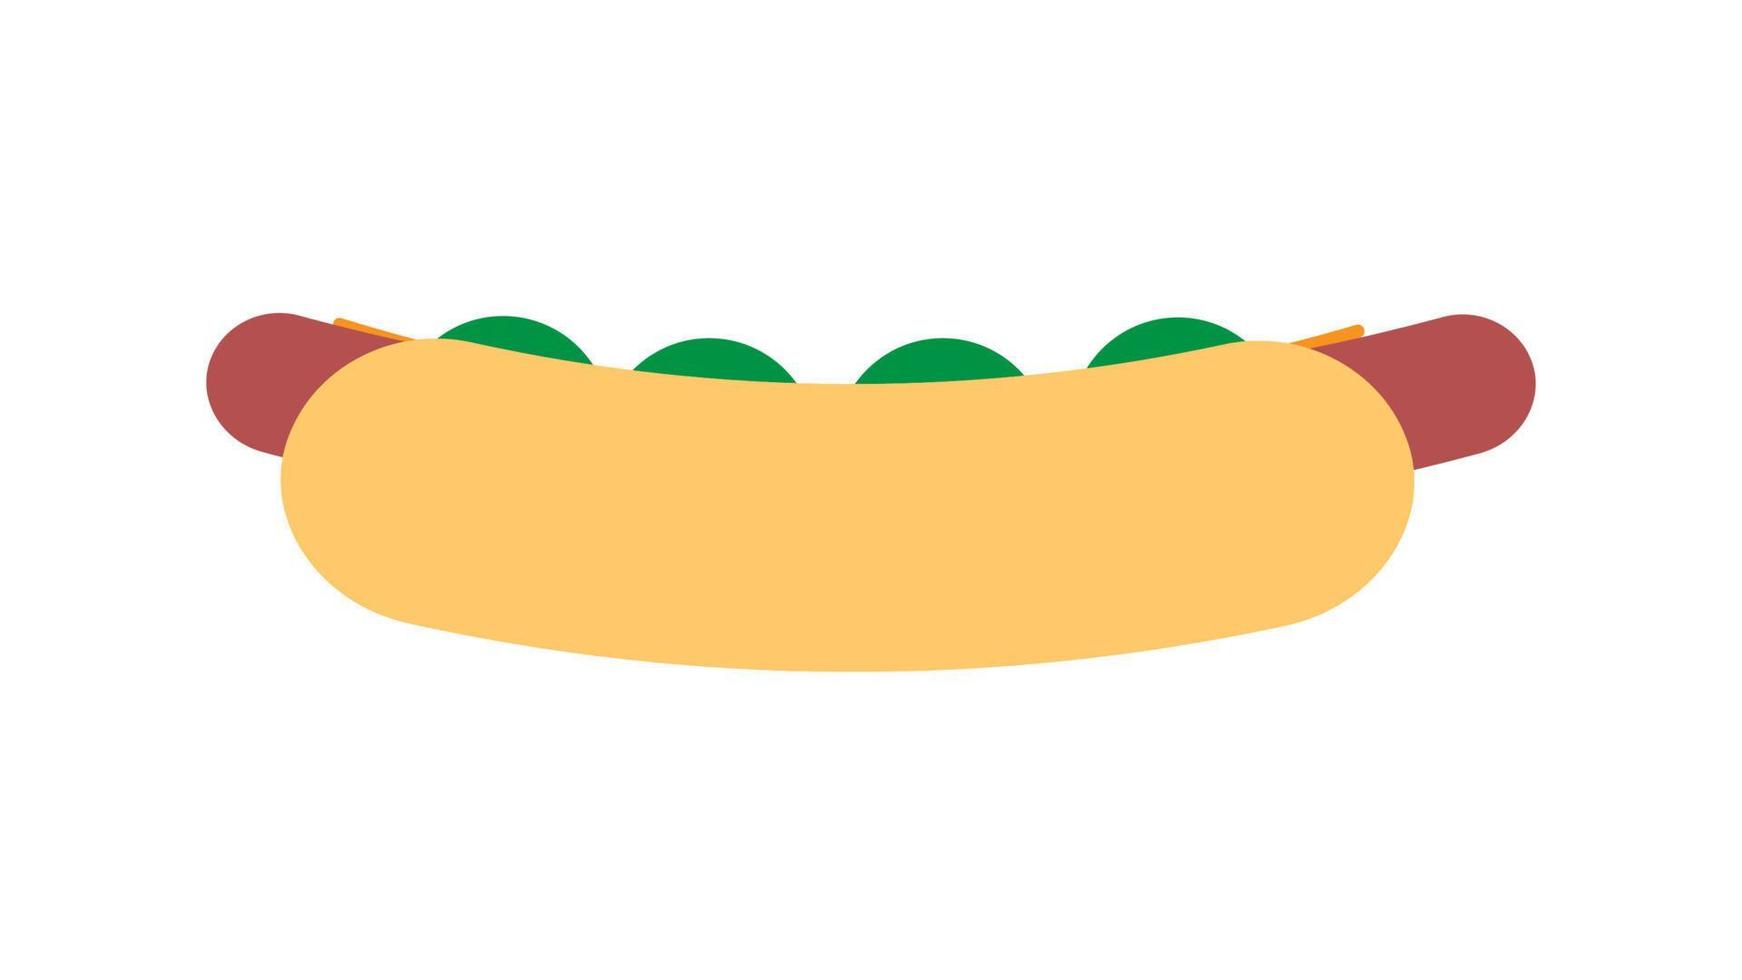 cachorro-quente em fundo branco, ilustração vetorial. pão com salsicha, ketchup, mostarda. recheio saudável de salsichas, queijo, ervas, lanche insalubre. sanduíche de caminhão de comida vetor